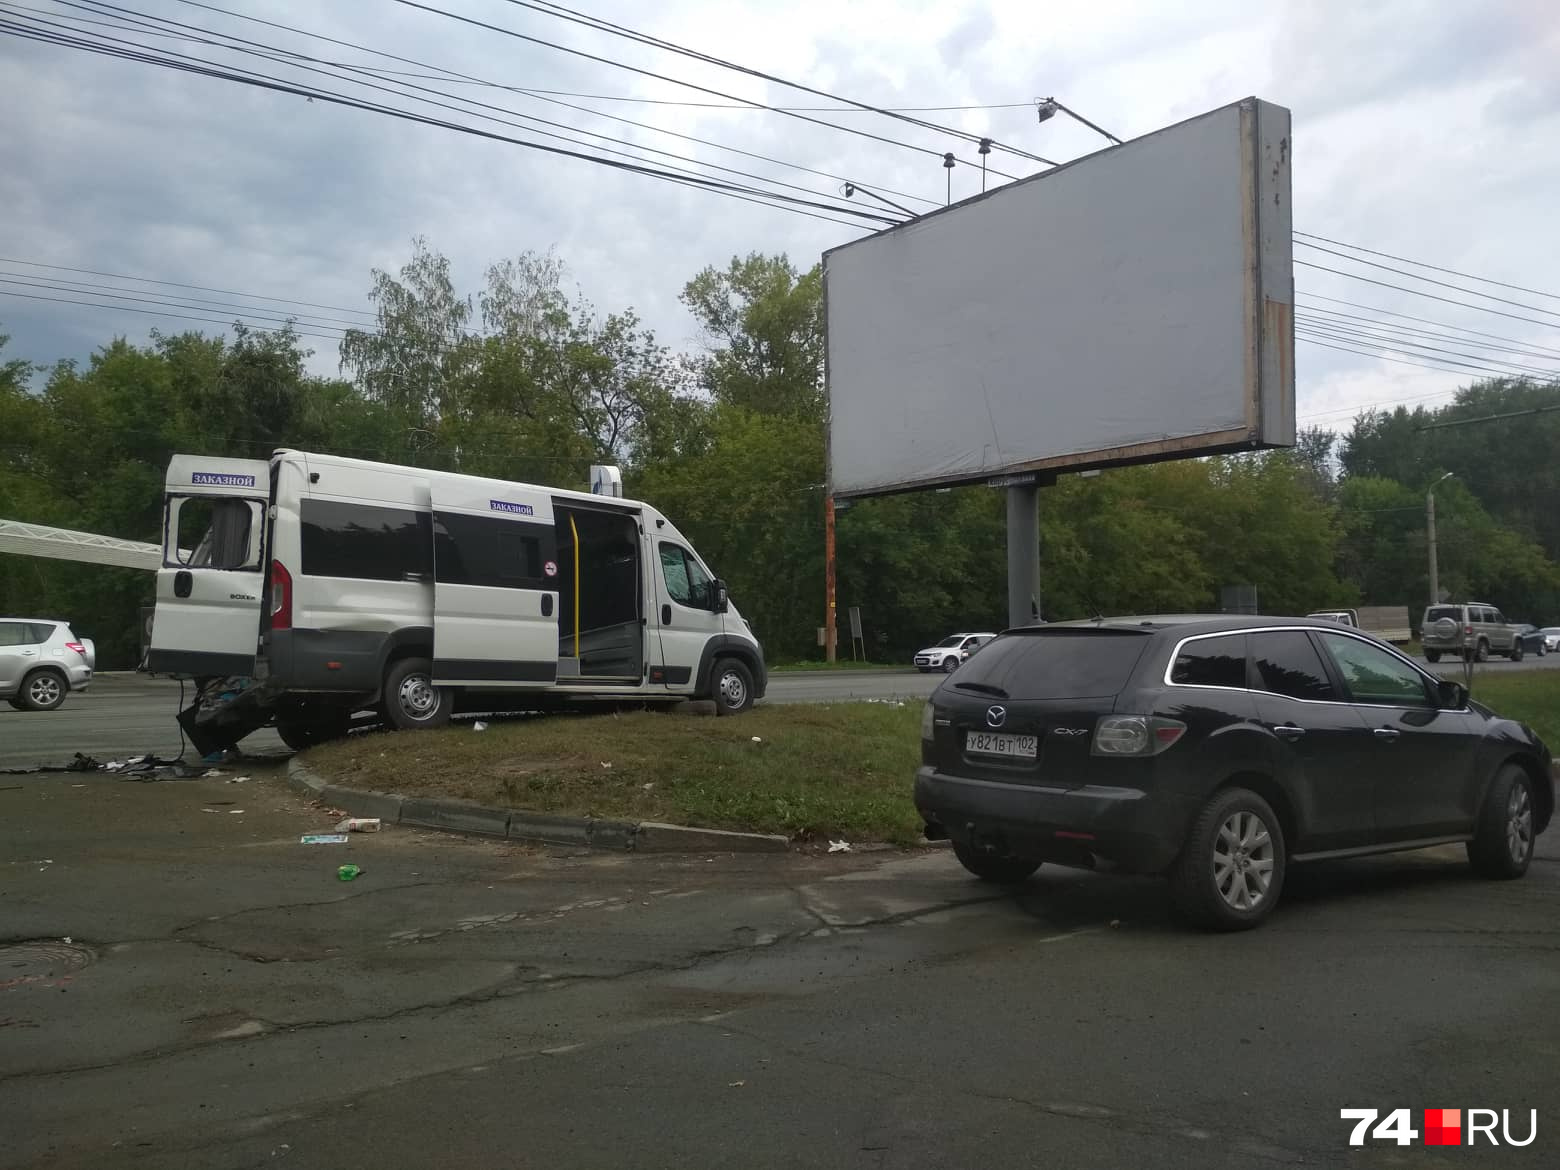 Представитель компании, выдавшей лицензию перевозчику, приехал в Челябинск на Mazda CX-7